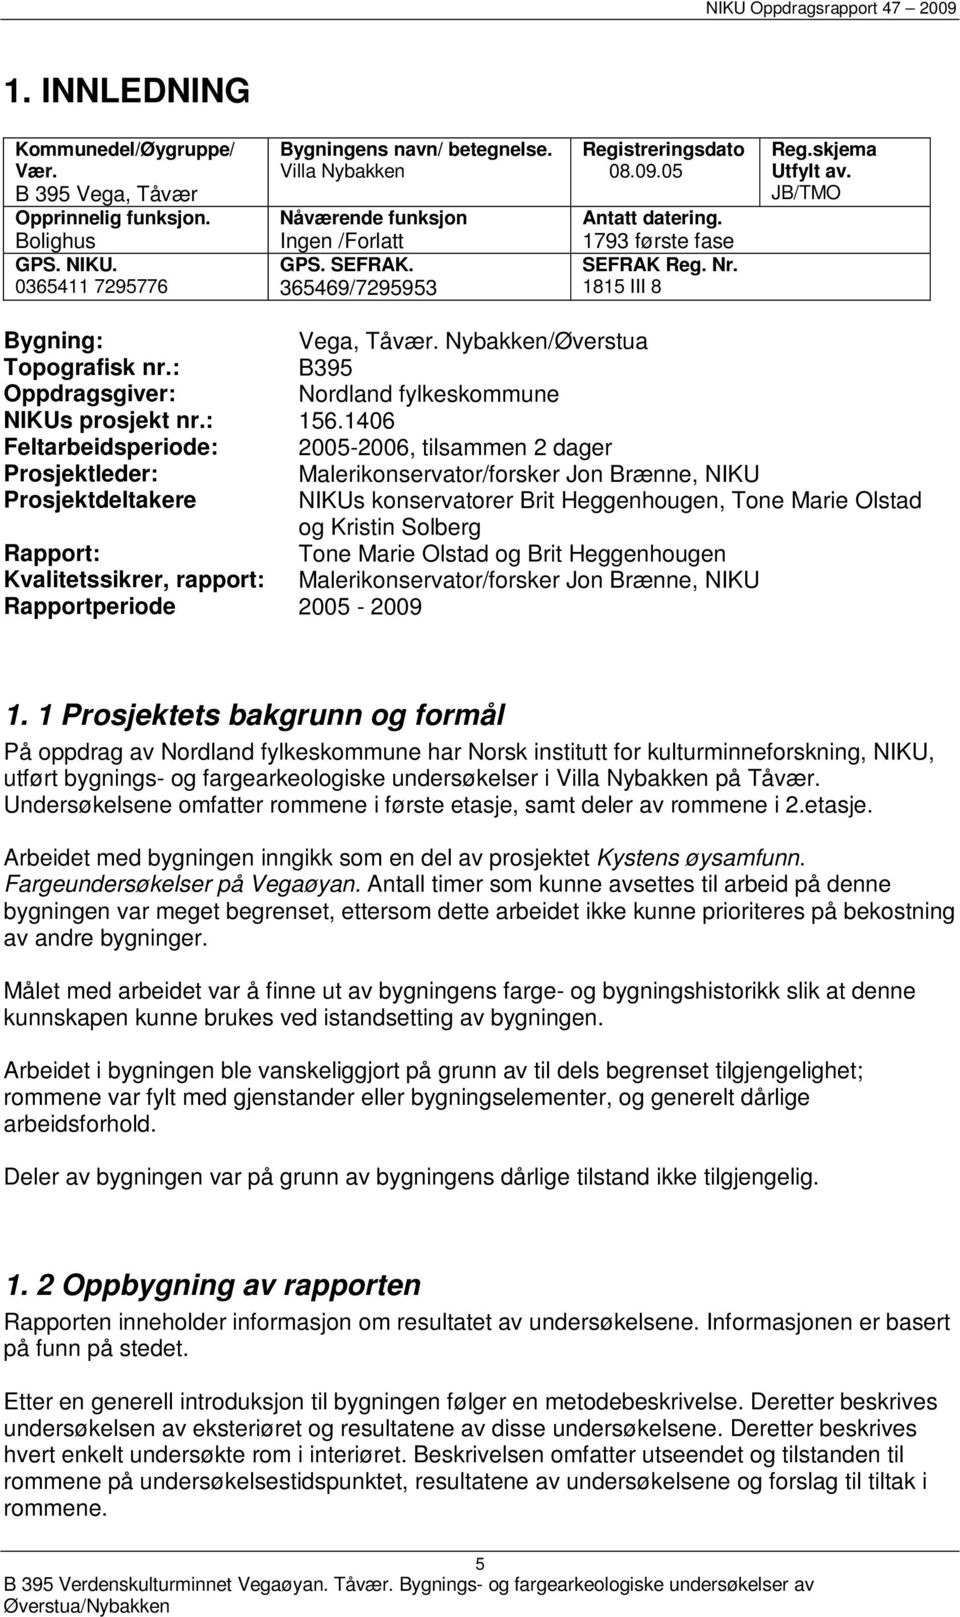 : B395 Oppdragsgiver: Nordland fylkeskommune NIKUs prosjekt nr.: 156.